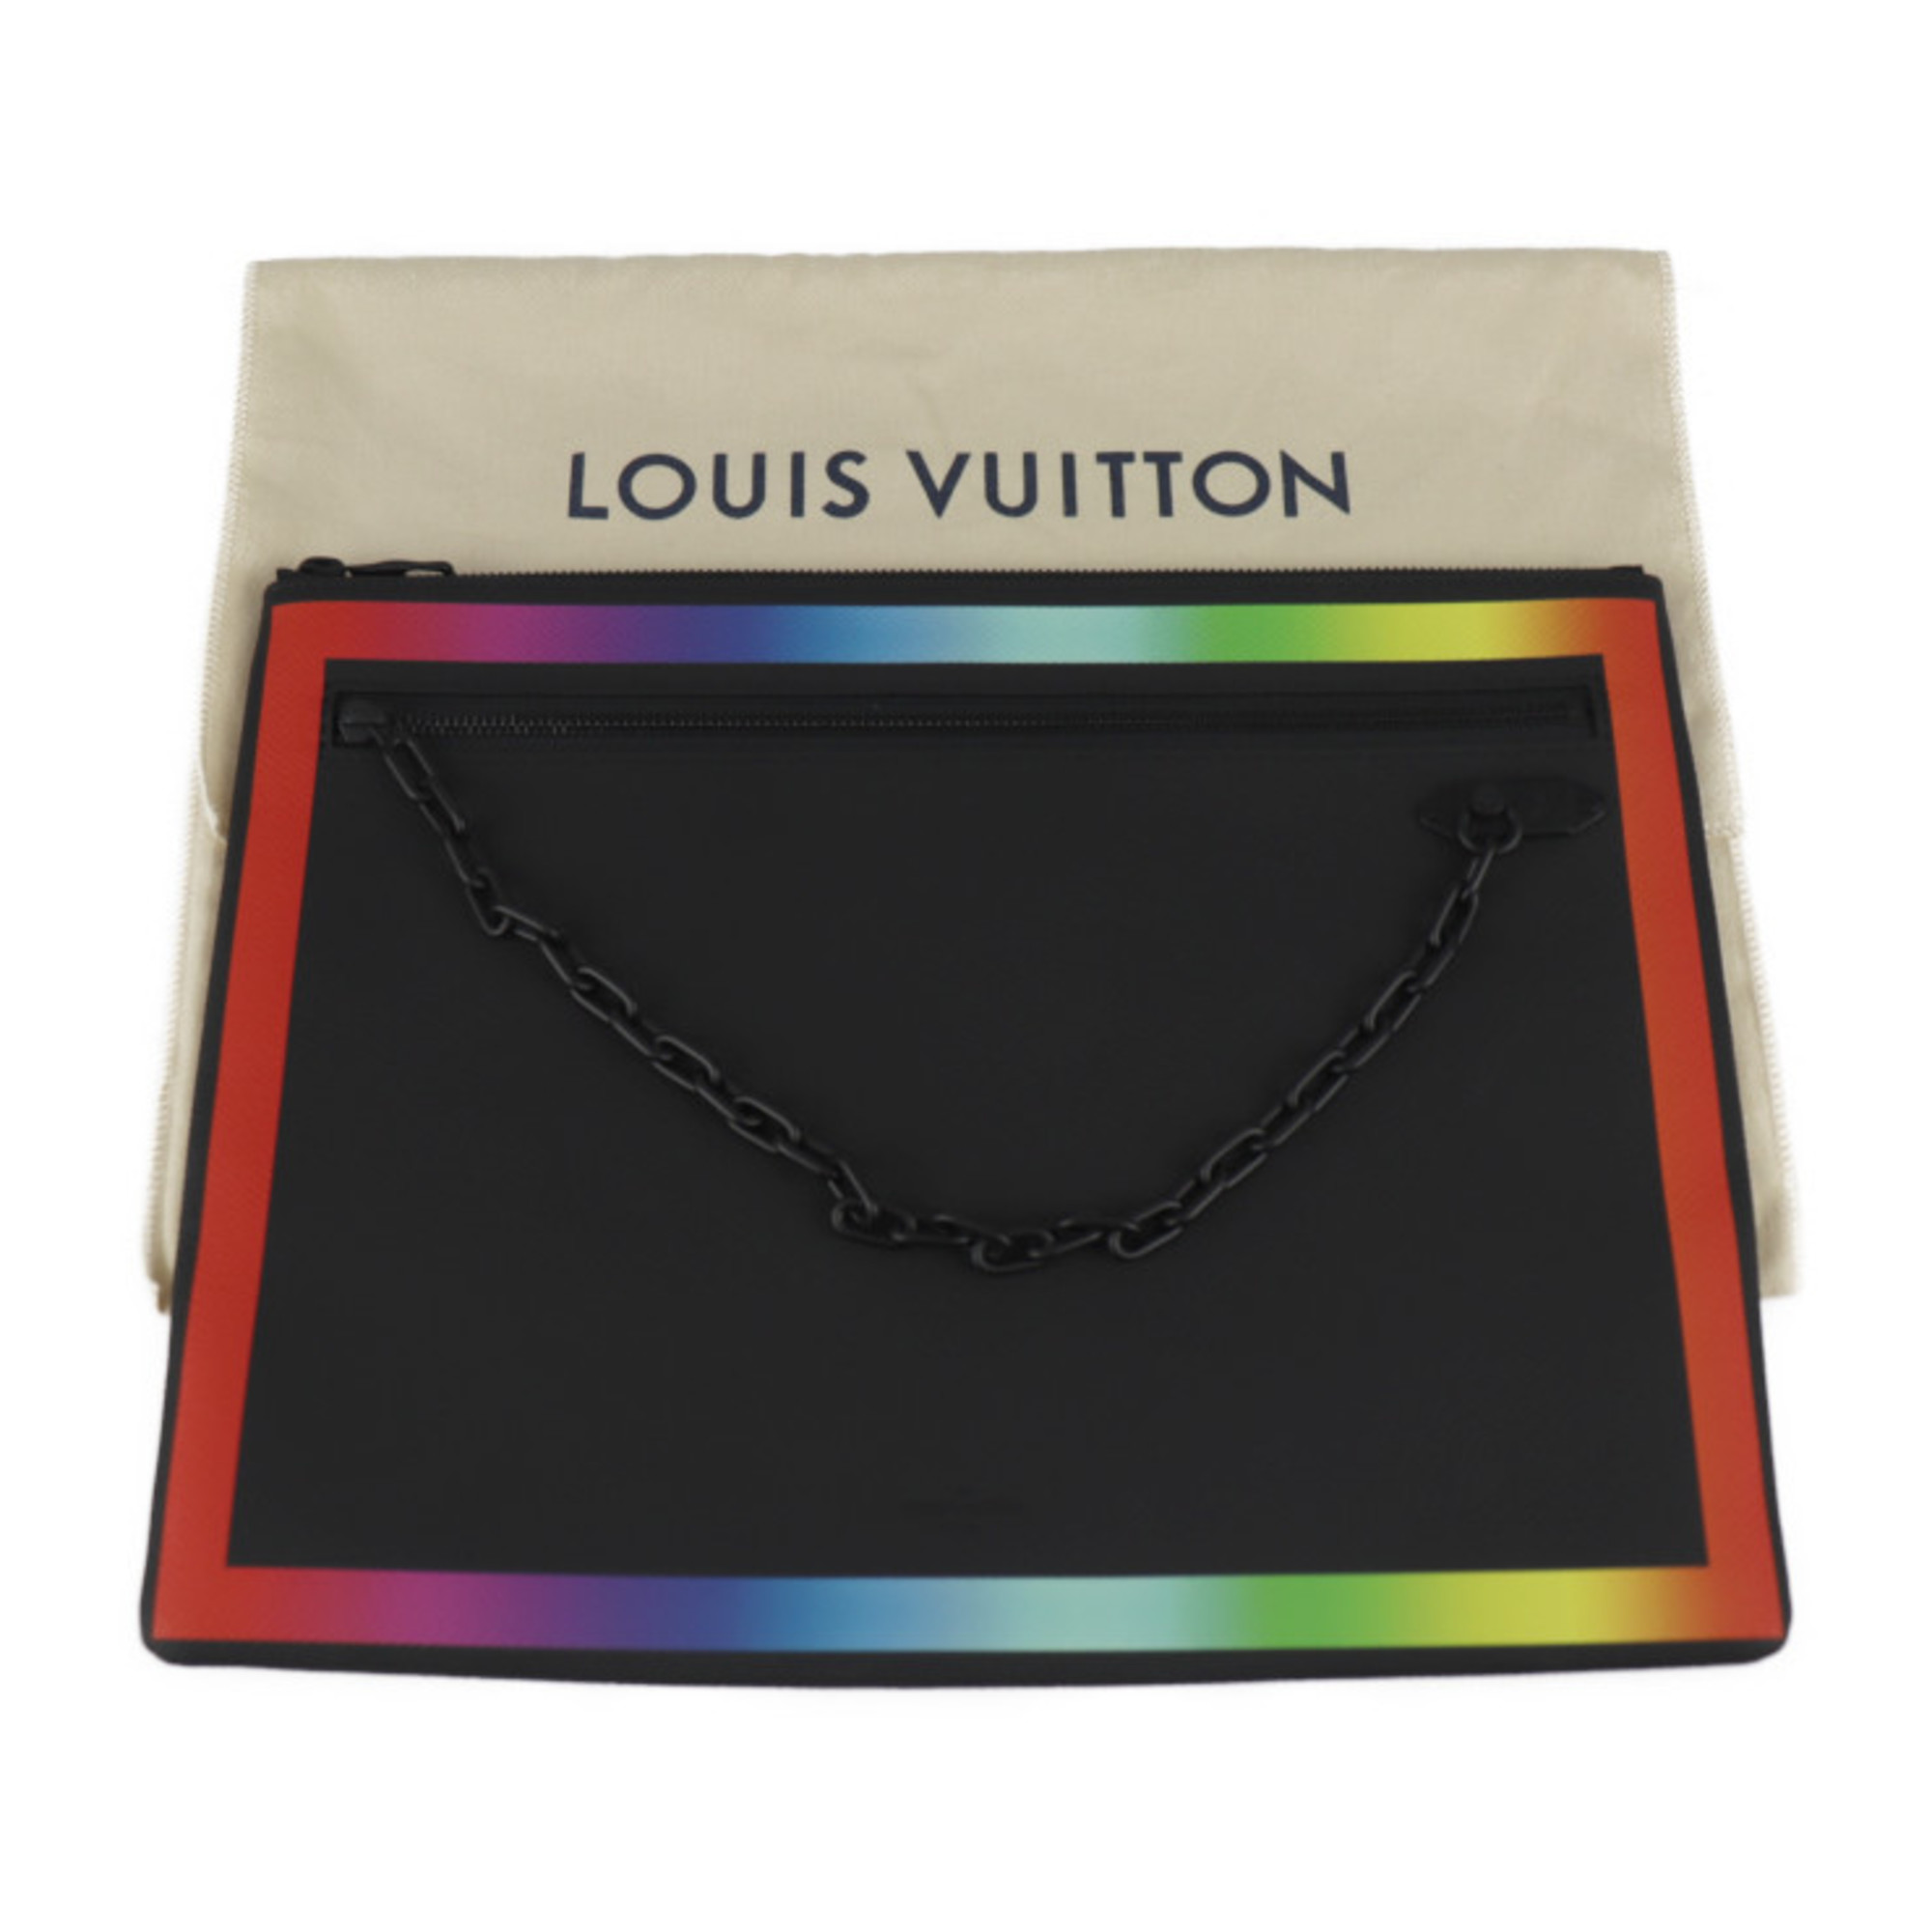 LOUIS VUITTON Louis Vuitton Pochette A4 Taiga Rainbow Clutch Bag M30347 Black 2019AW Limited Virgil Abloh Chain